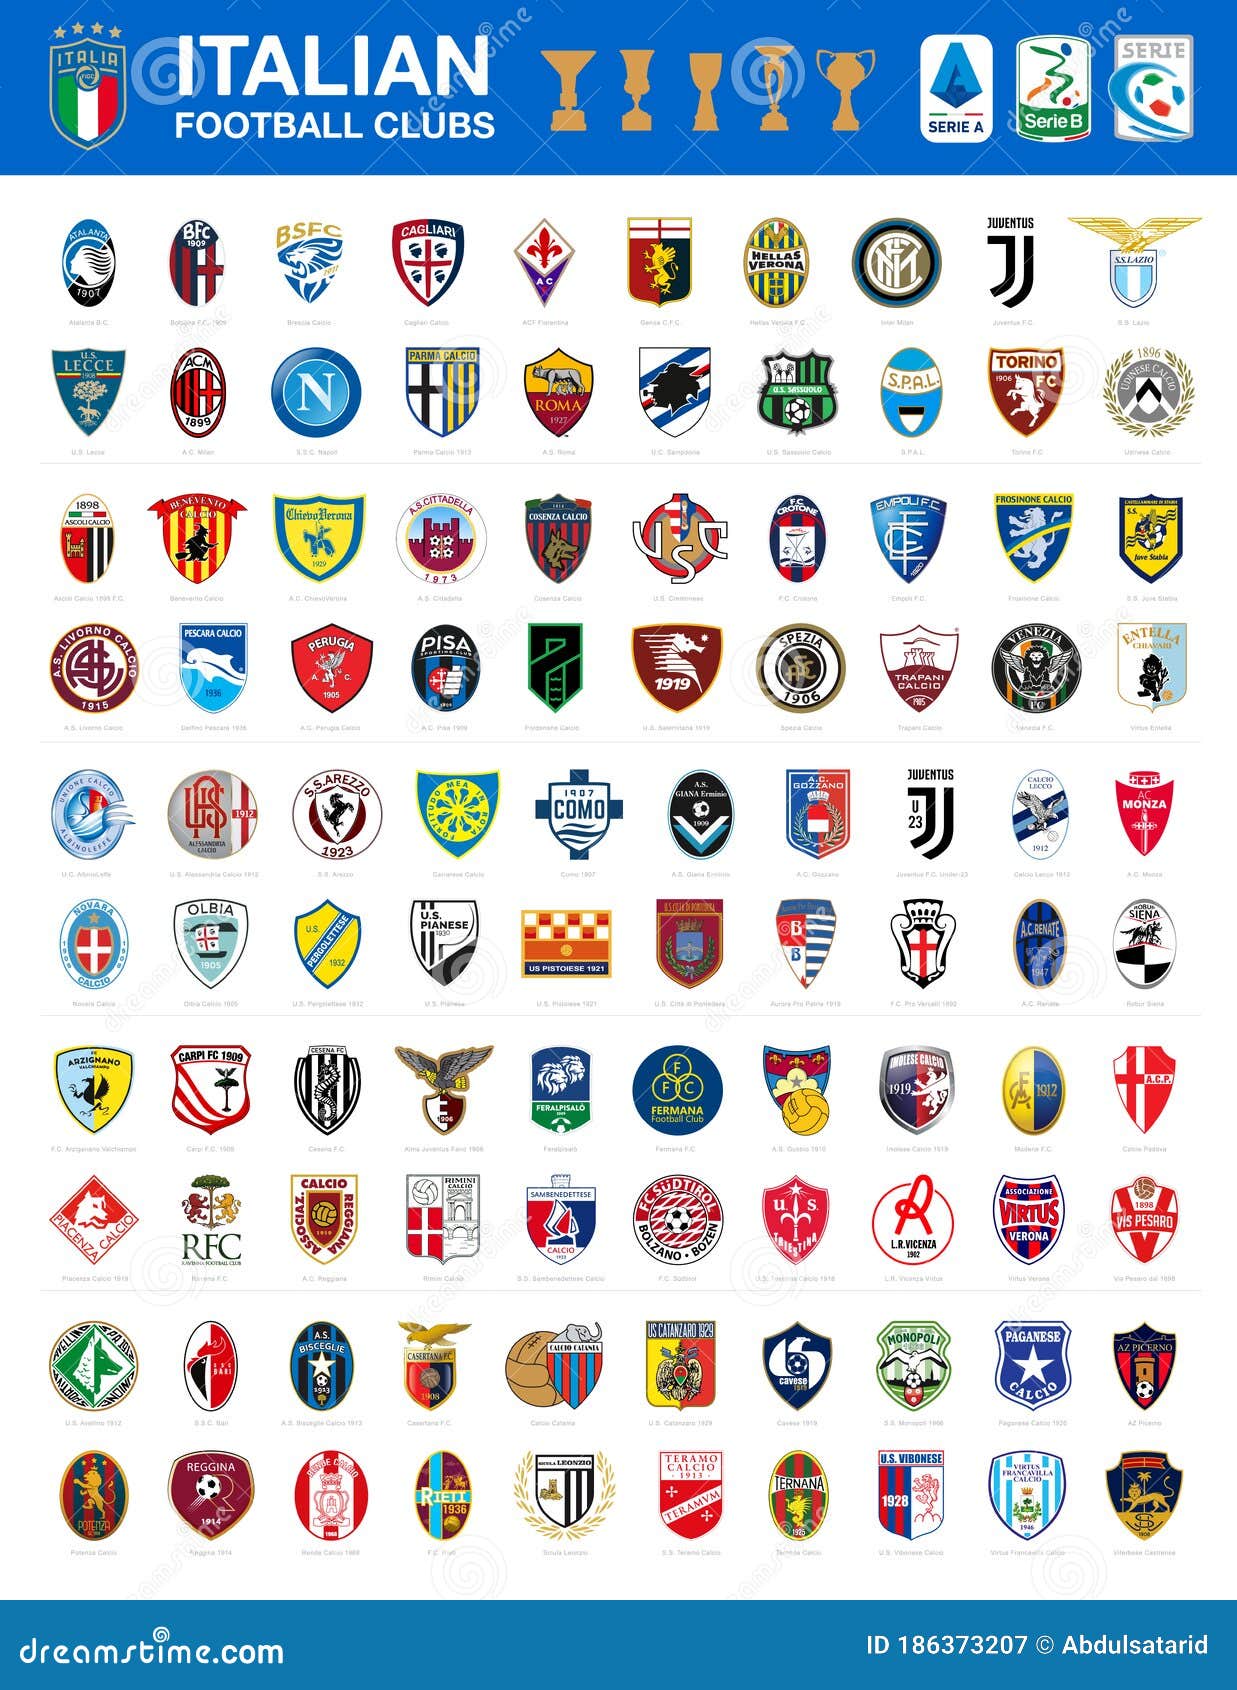 Serie B futbol Italiano, campeonato serie B futbol Italia equipos